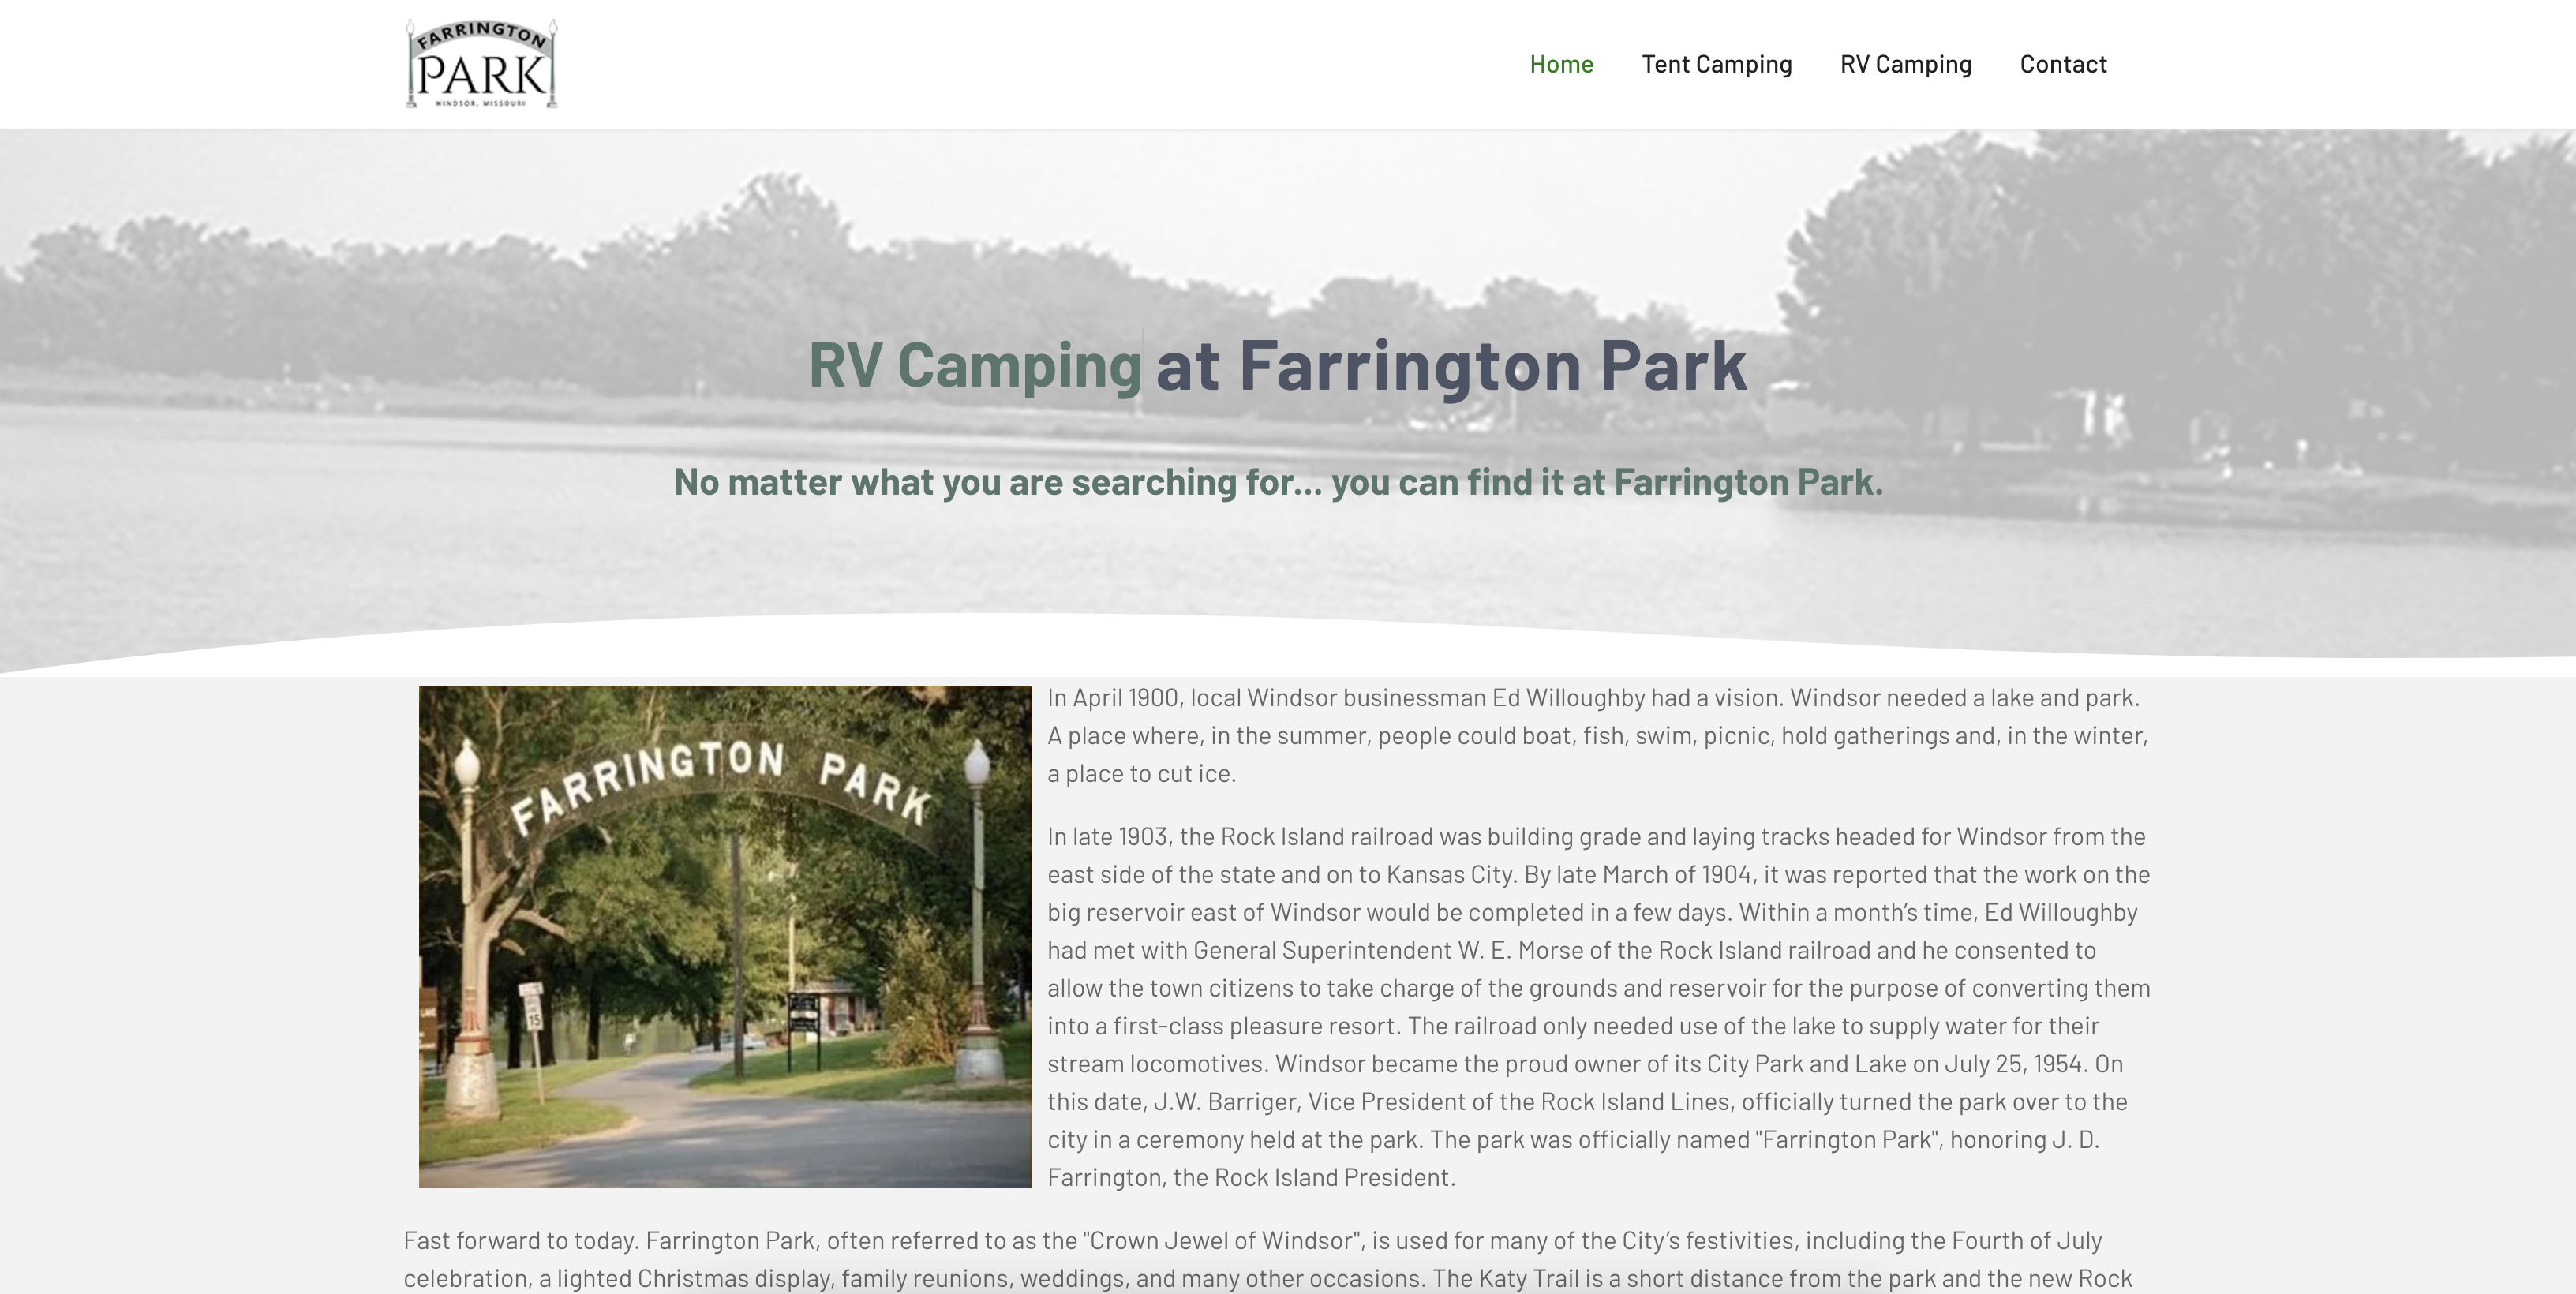 FarringtonPark.org